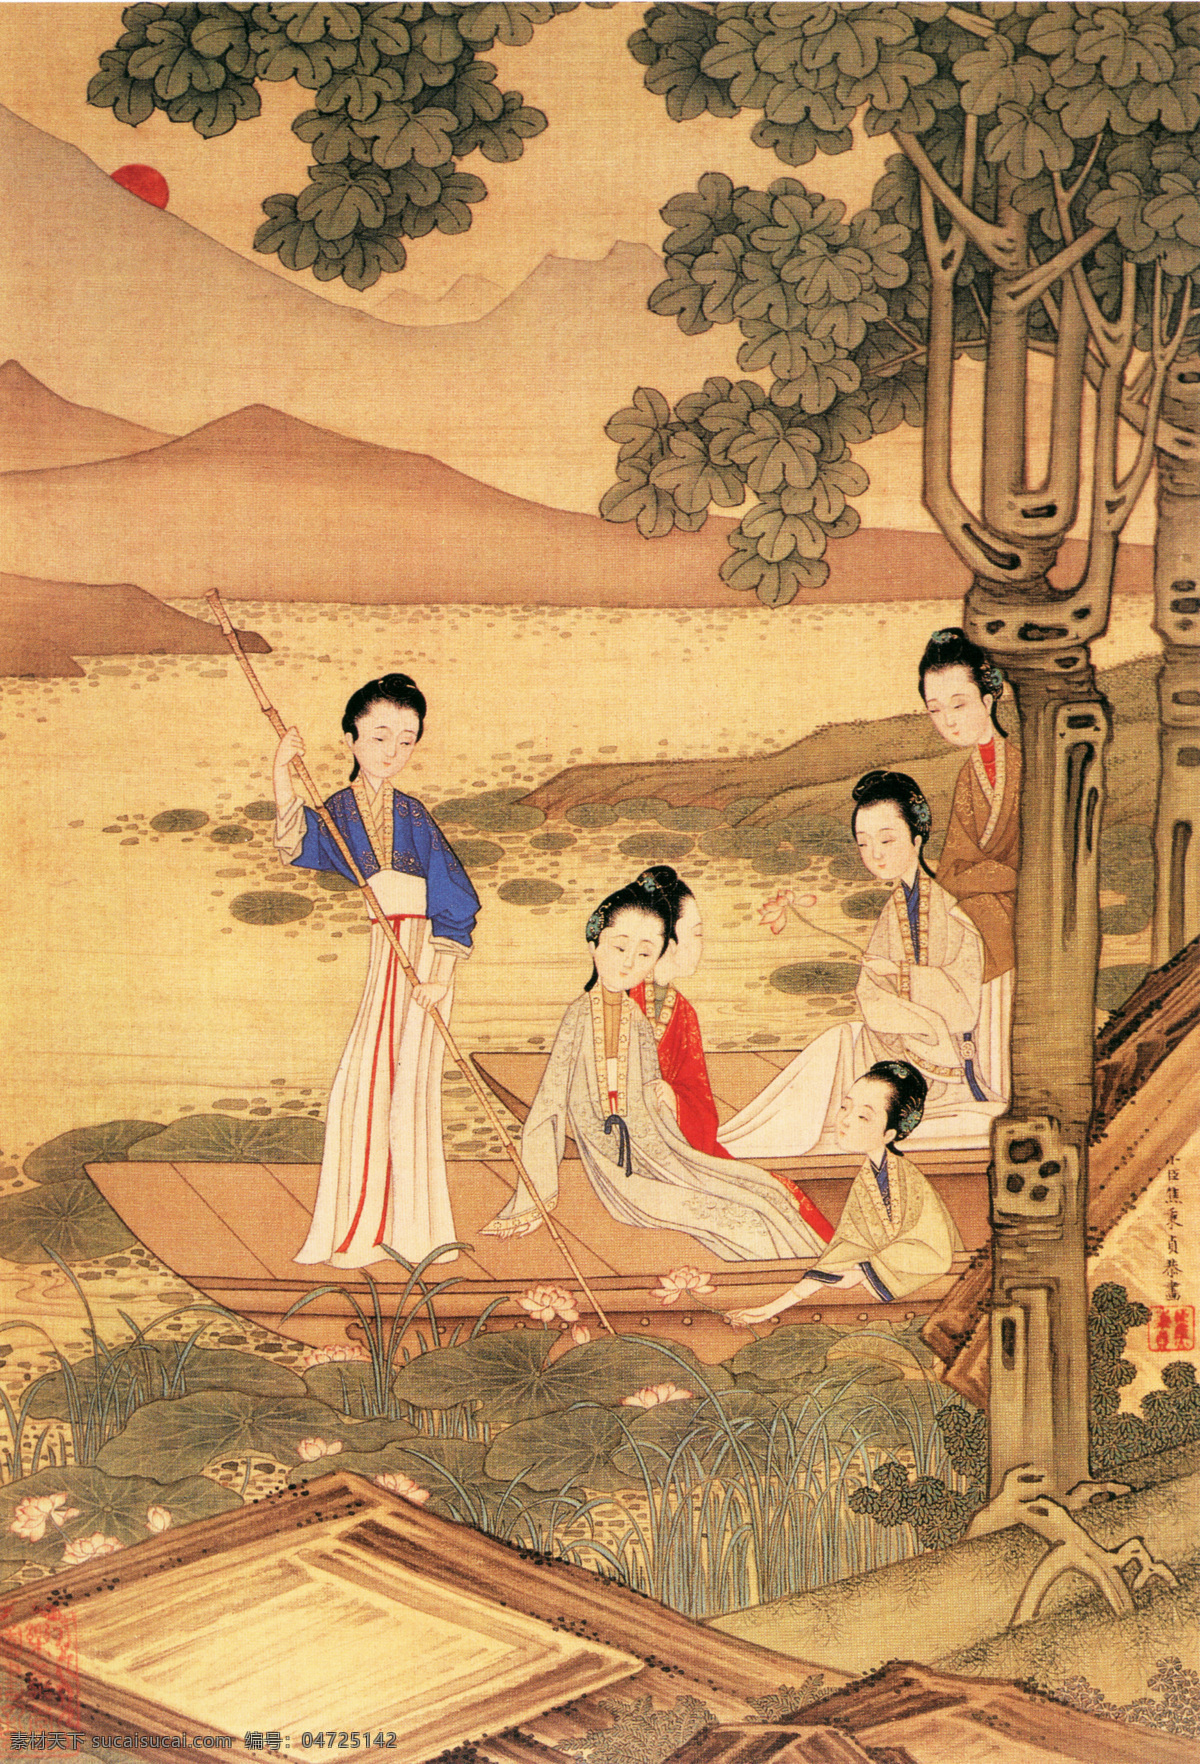 仕女图b 人物画 中国 古画 中国古画 设计素材 人物名画 古典藏画 书画美术 黄色